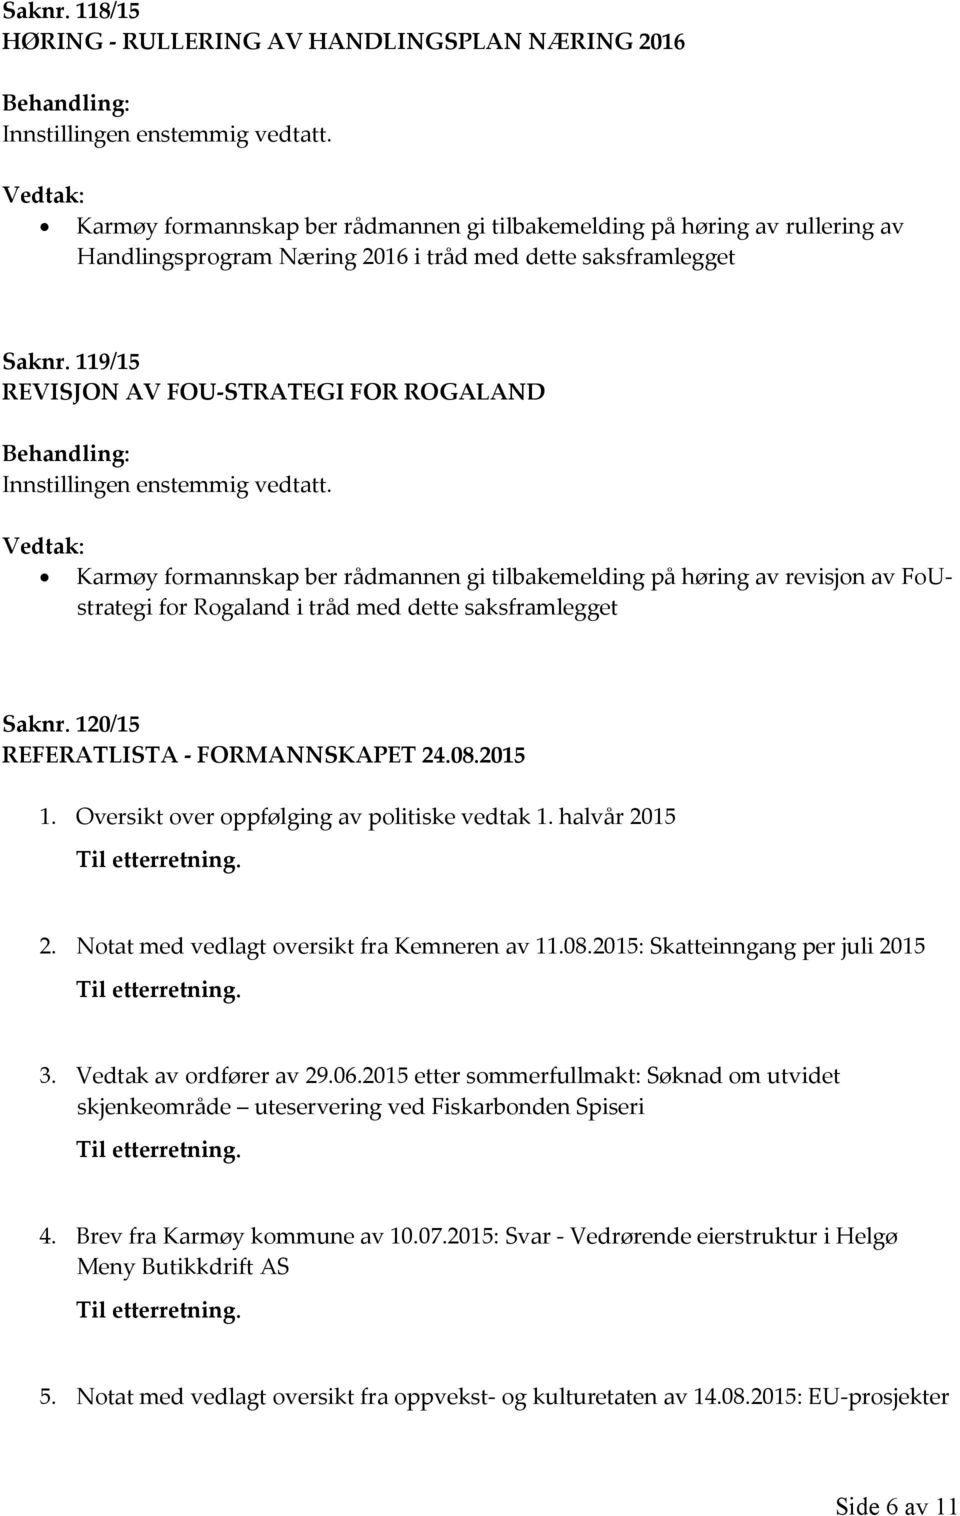 119/15 REVISJON AV FOU-STRATEGI FOR ROGALAND Karmøy formannskap ber rådmannen gi tilbakemelding på høring av revisjon av FoUstrategi for Rogaland i tråd med dette saksframlegget  120/15 REFERATLISTA